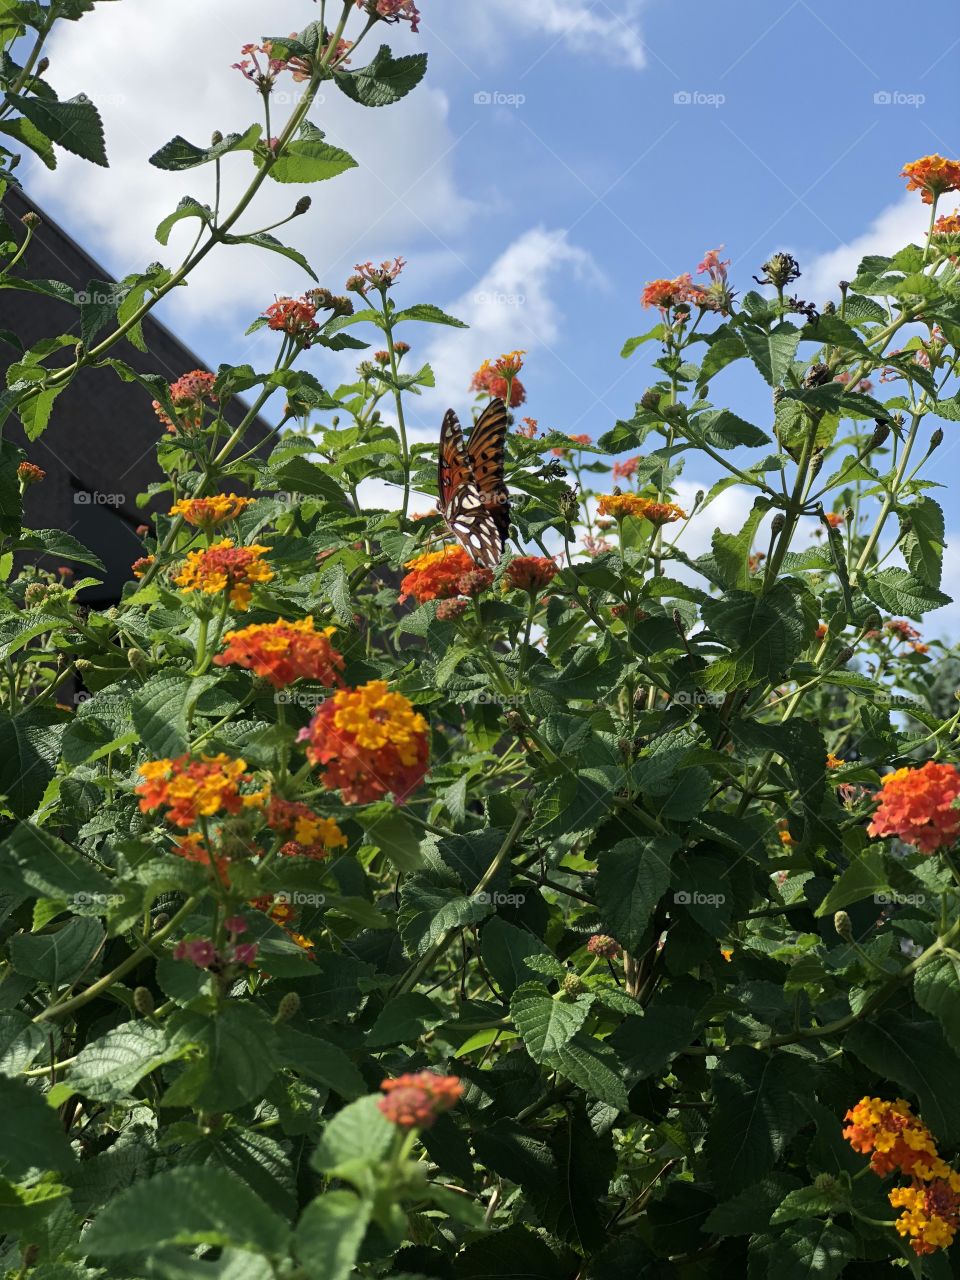 Butterfly in a orange flower bush 